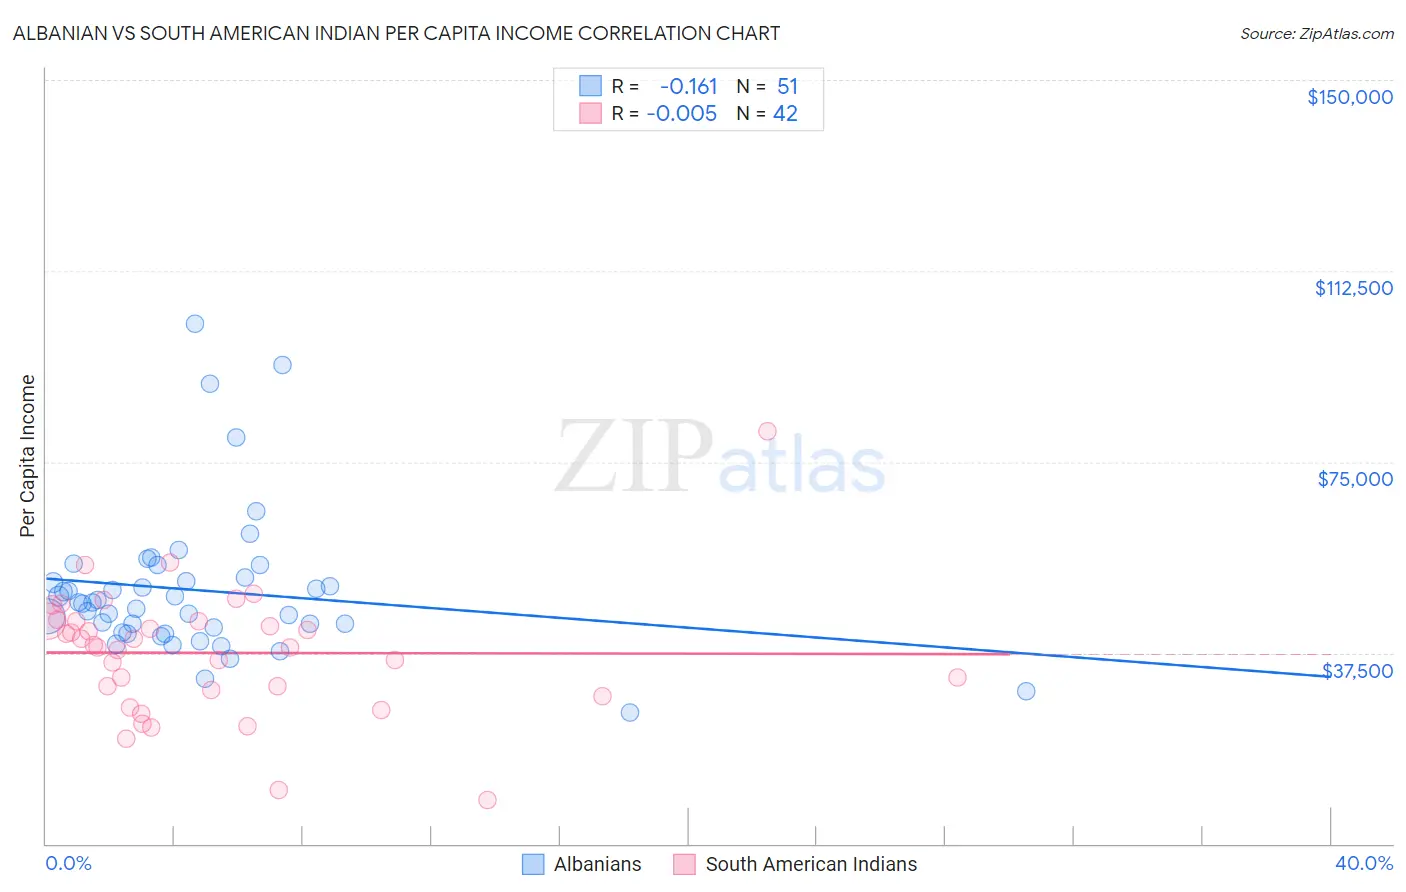 Albanian vs South American Indian Per Capita Income